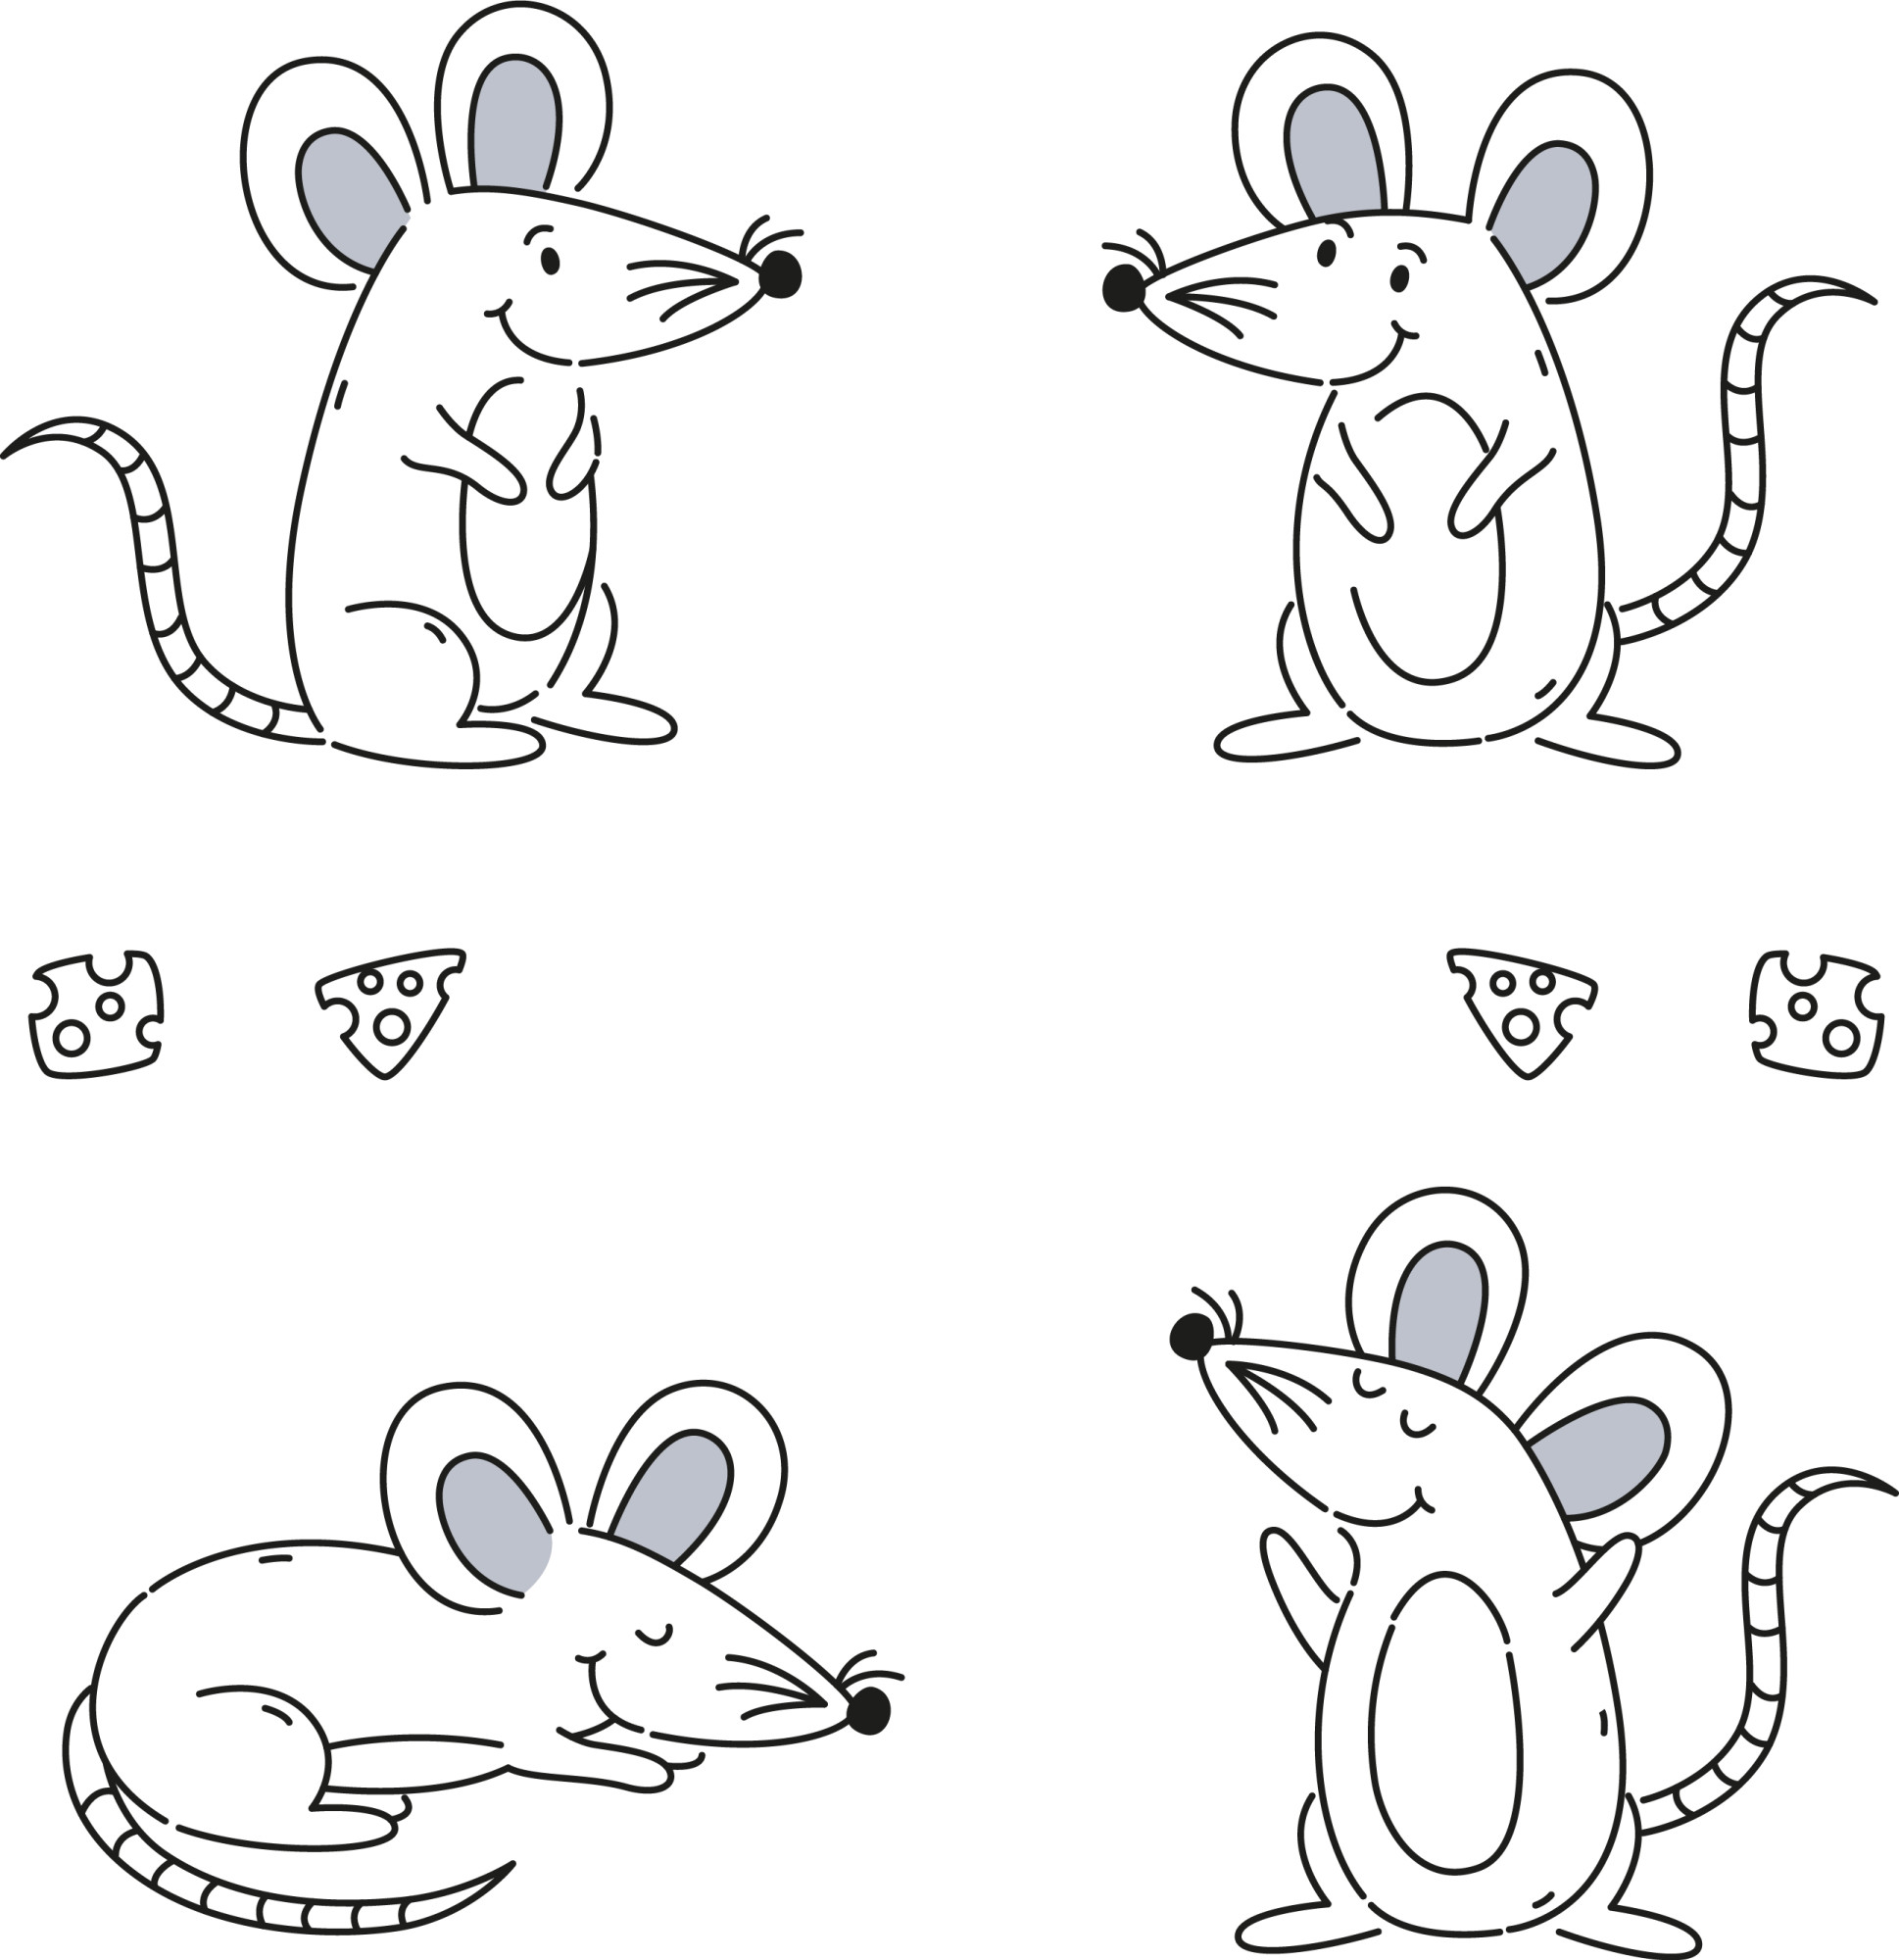 Раскраска для детей: набор милых мышей